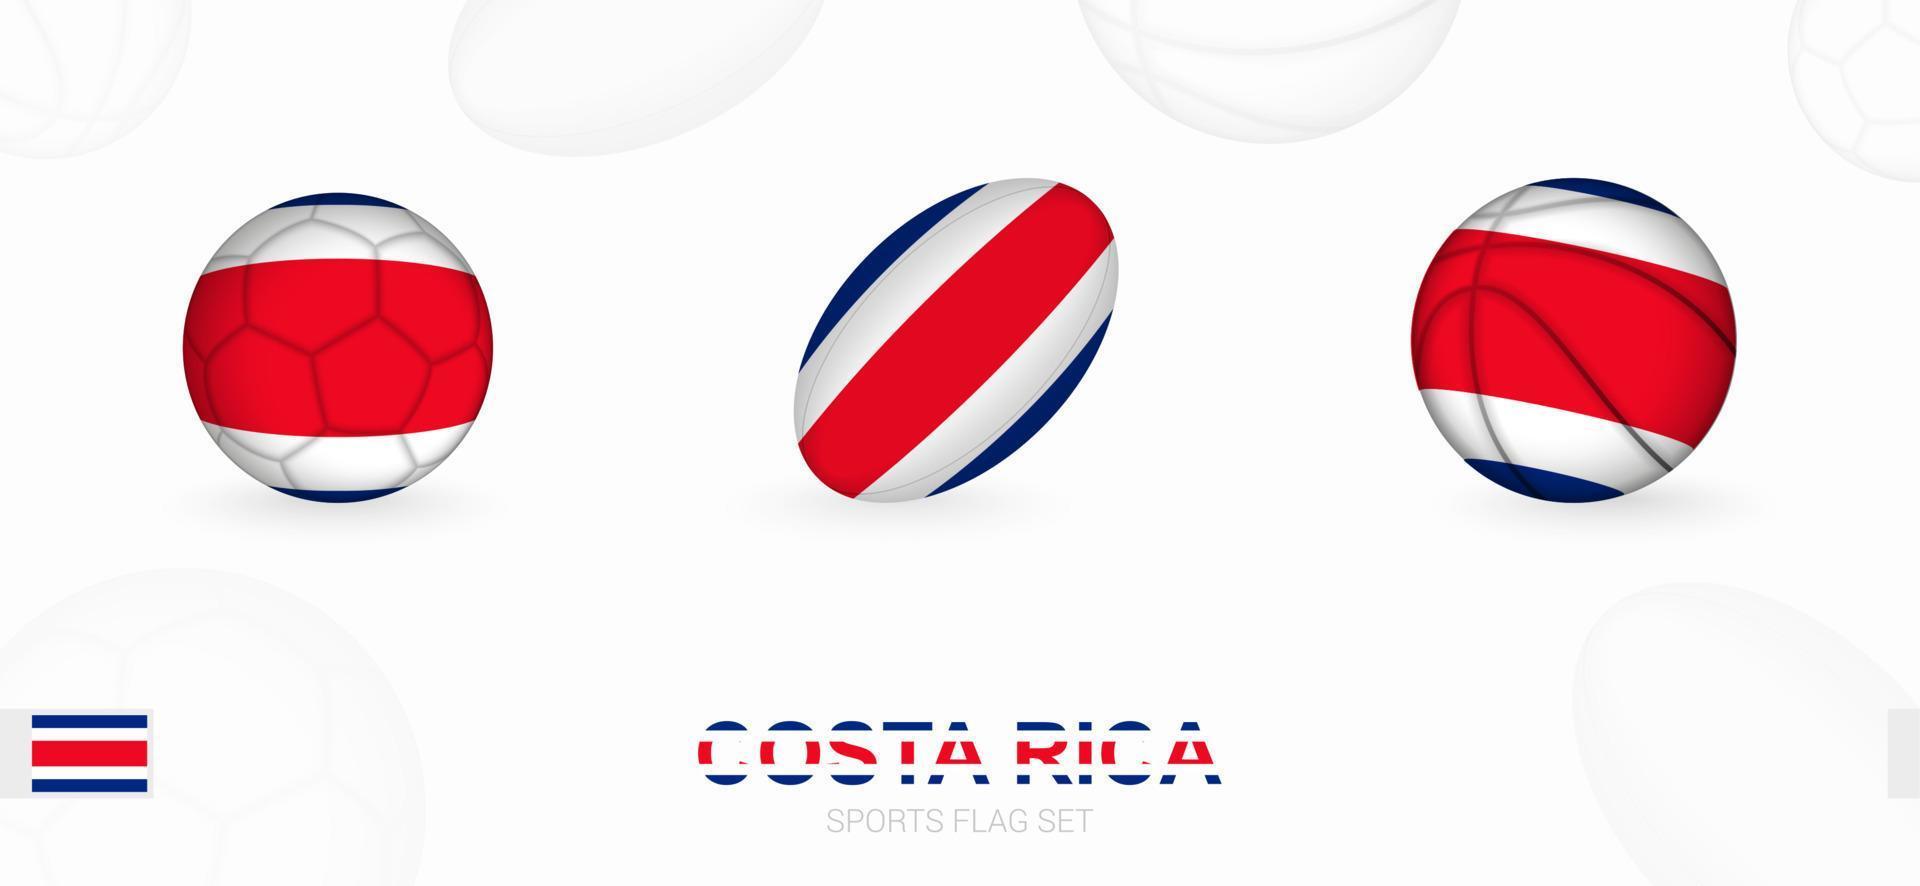 sporter ikoner för fotboll, rugby och basketboll med de flagga av costa rica. vektor